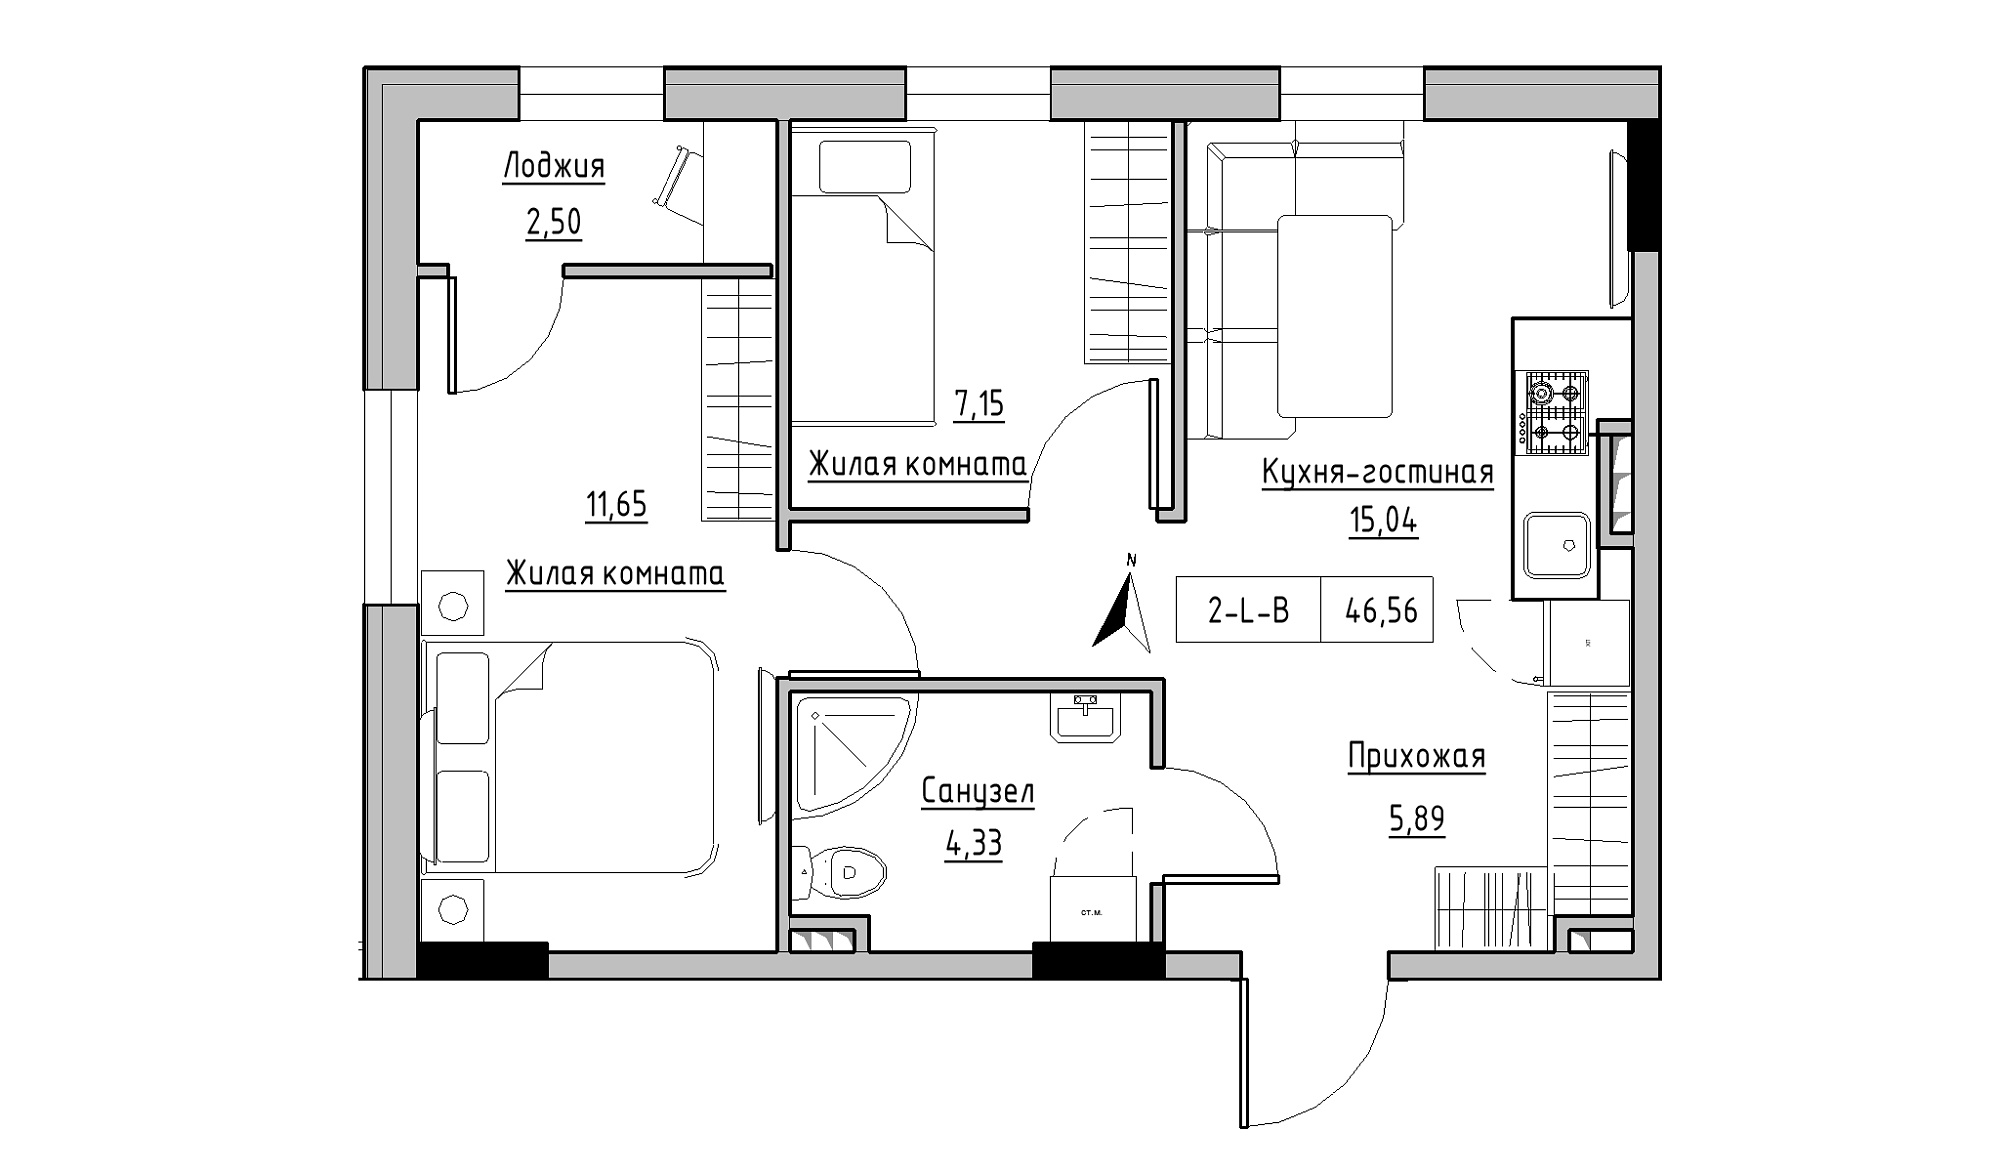 Планировка 2-к квартира площей 46.56м2, KS-025-02/0006.